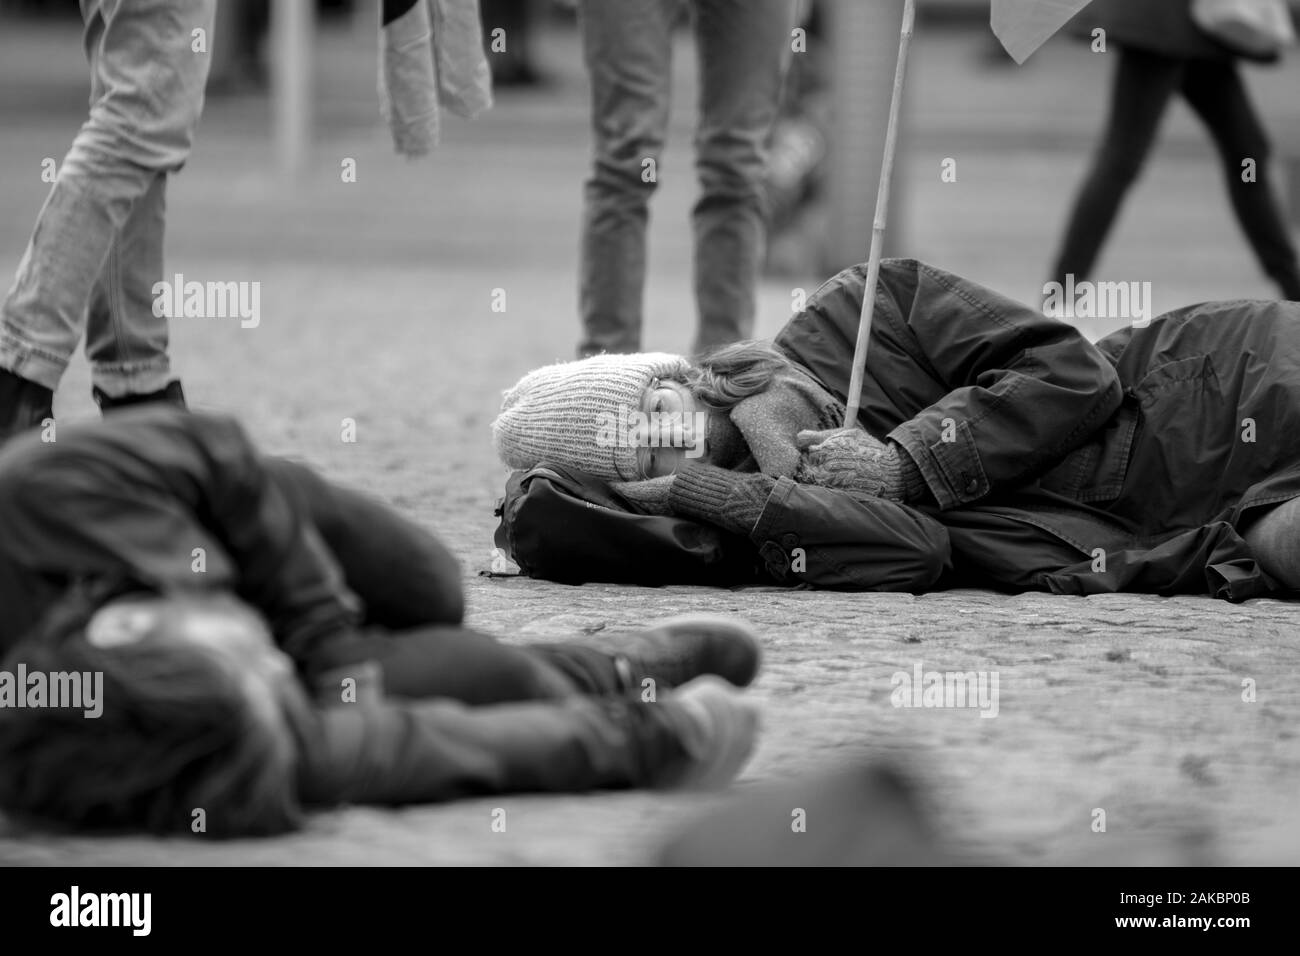 Les manifestants sont morts à l'extinction de la rébellion à la manifestation du Groupe sur le barrage de 6-1-2020 Amsterdam Pays-Bas 2020 en noir et blanc Banque D'Images